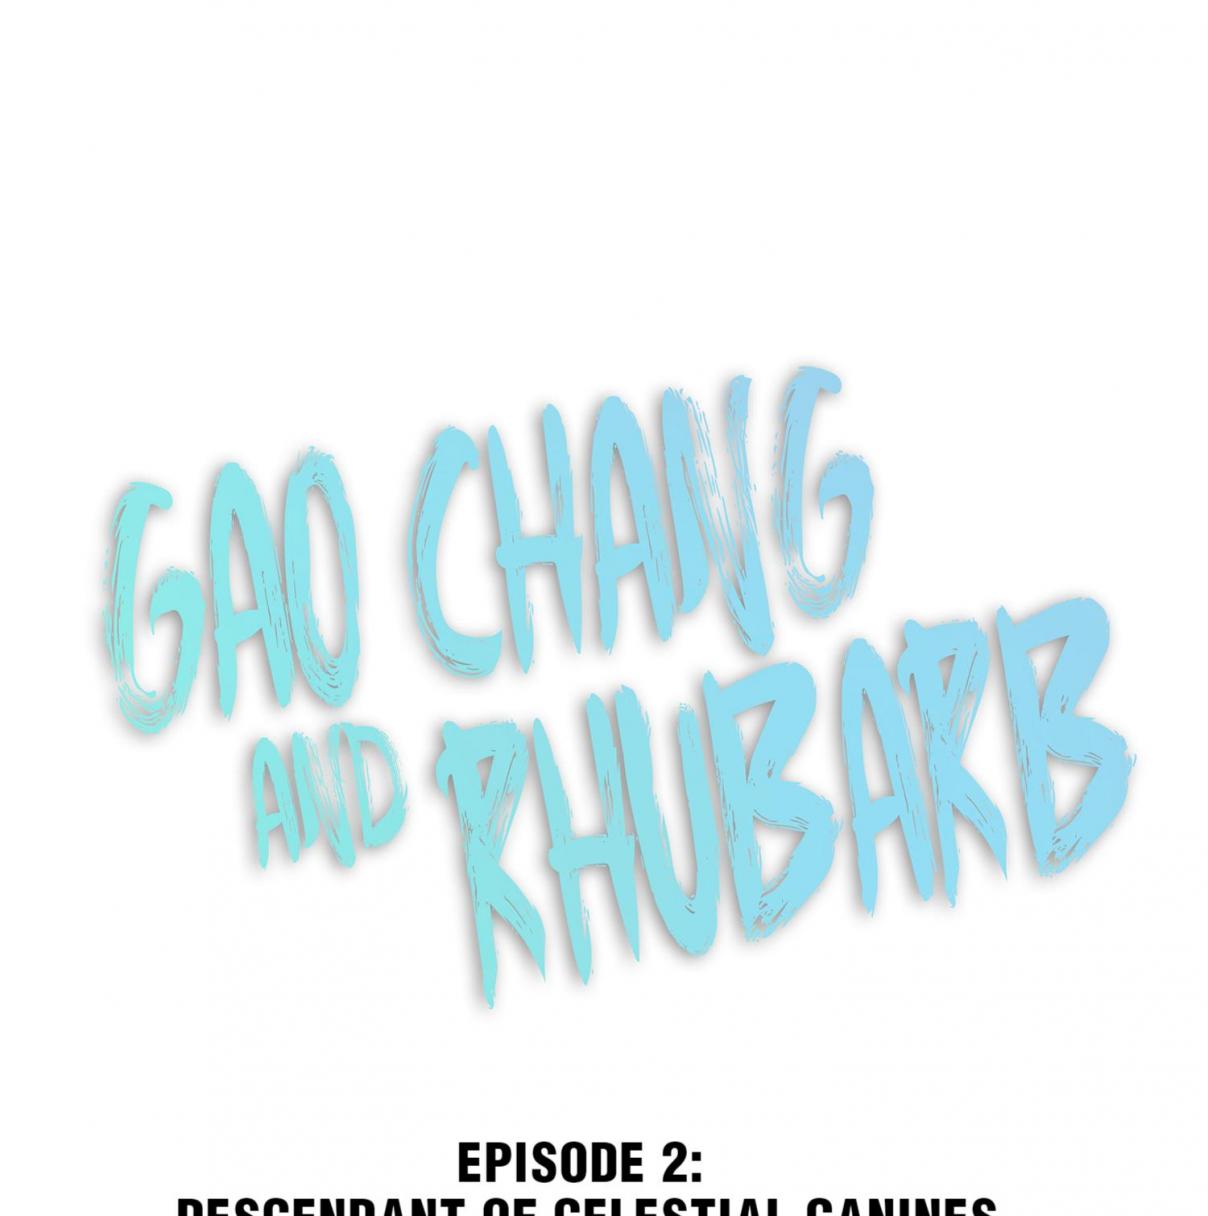 Gao Chang and Rhubarb 2